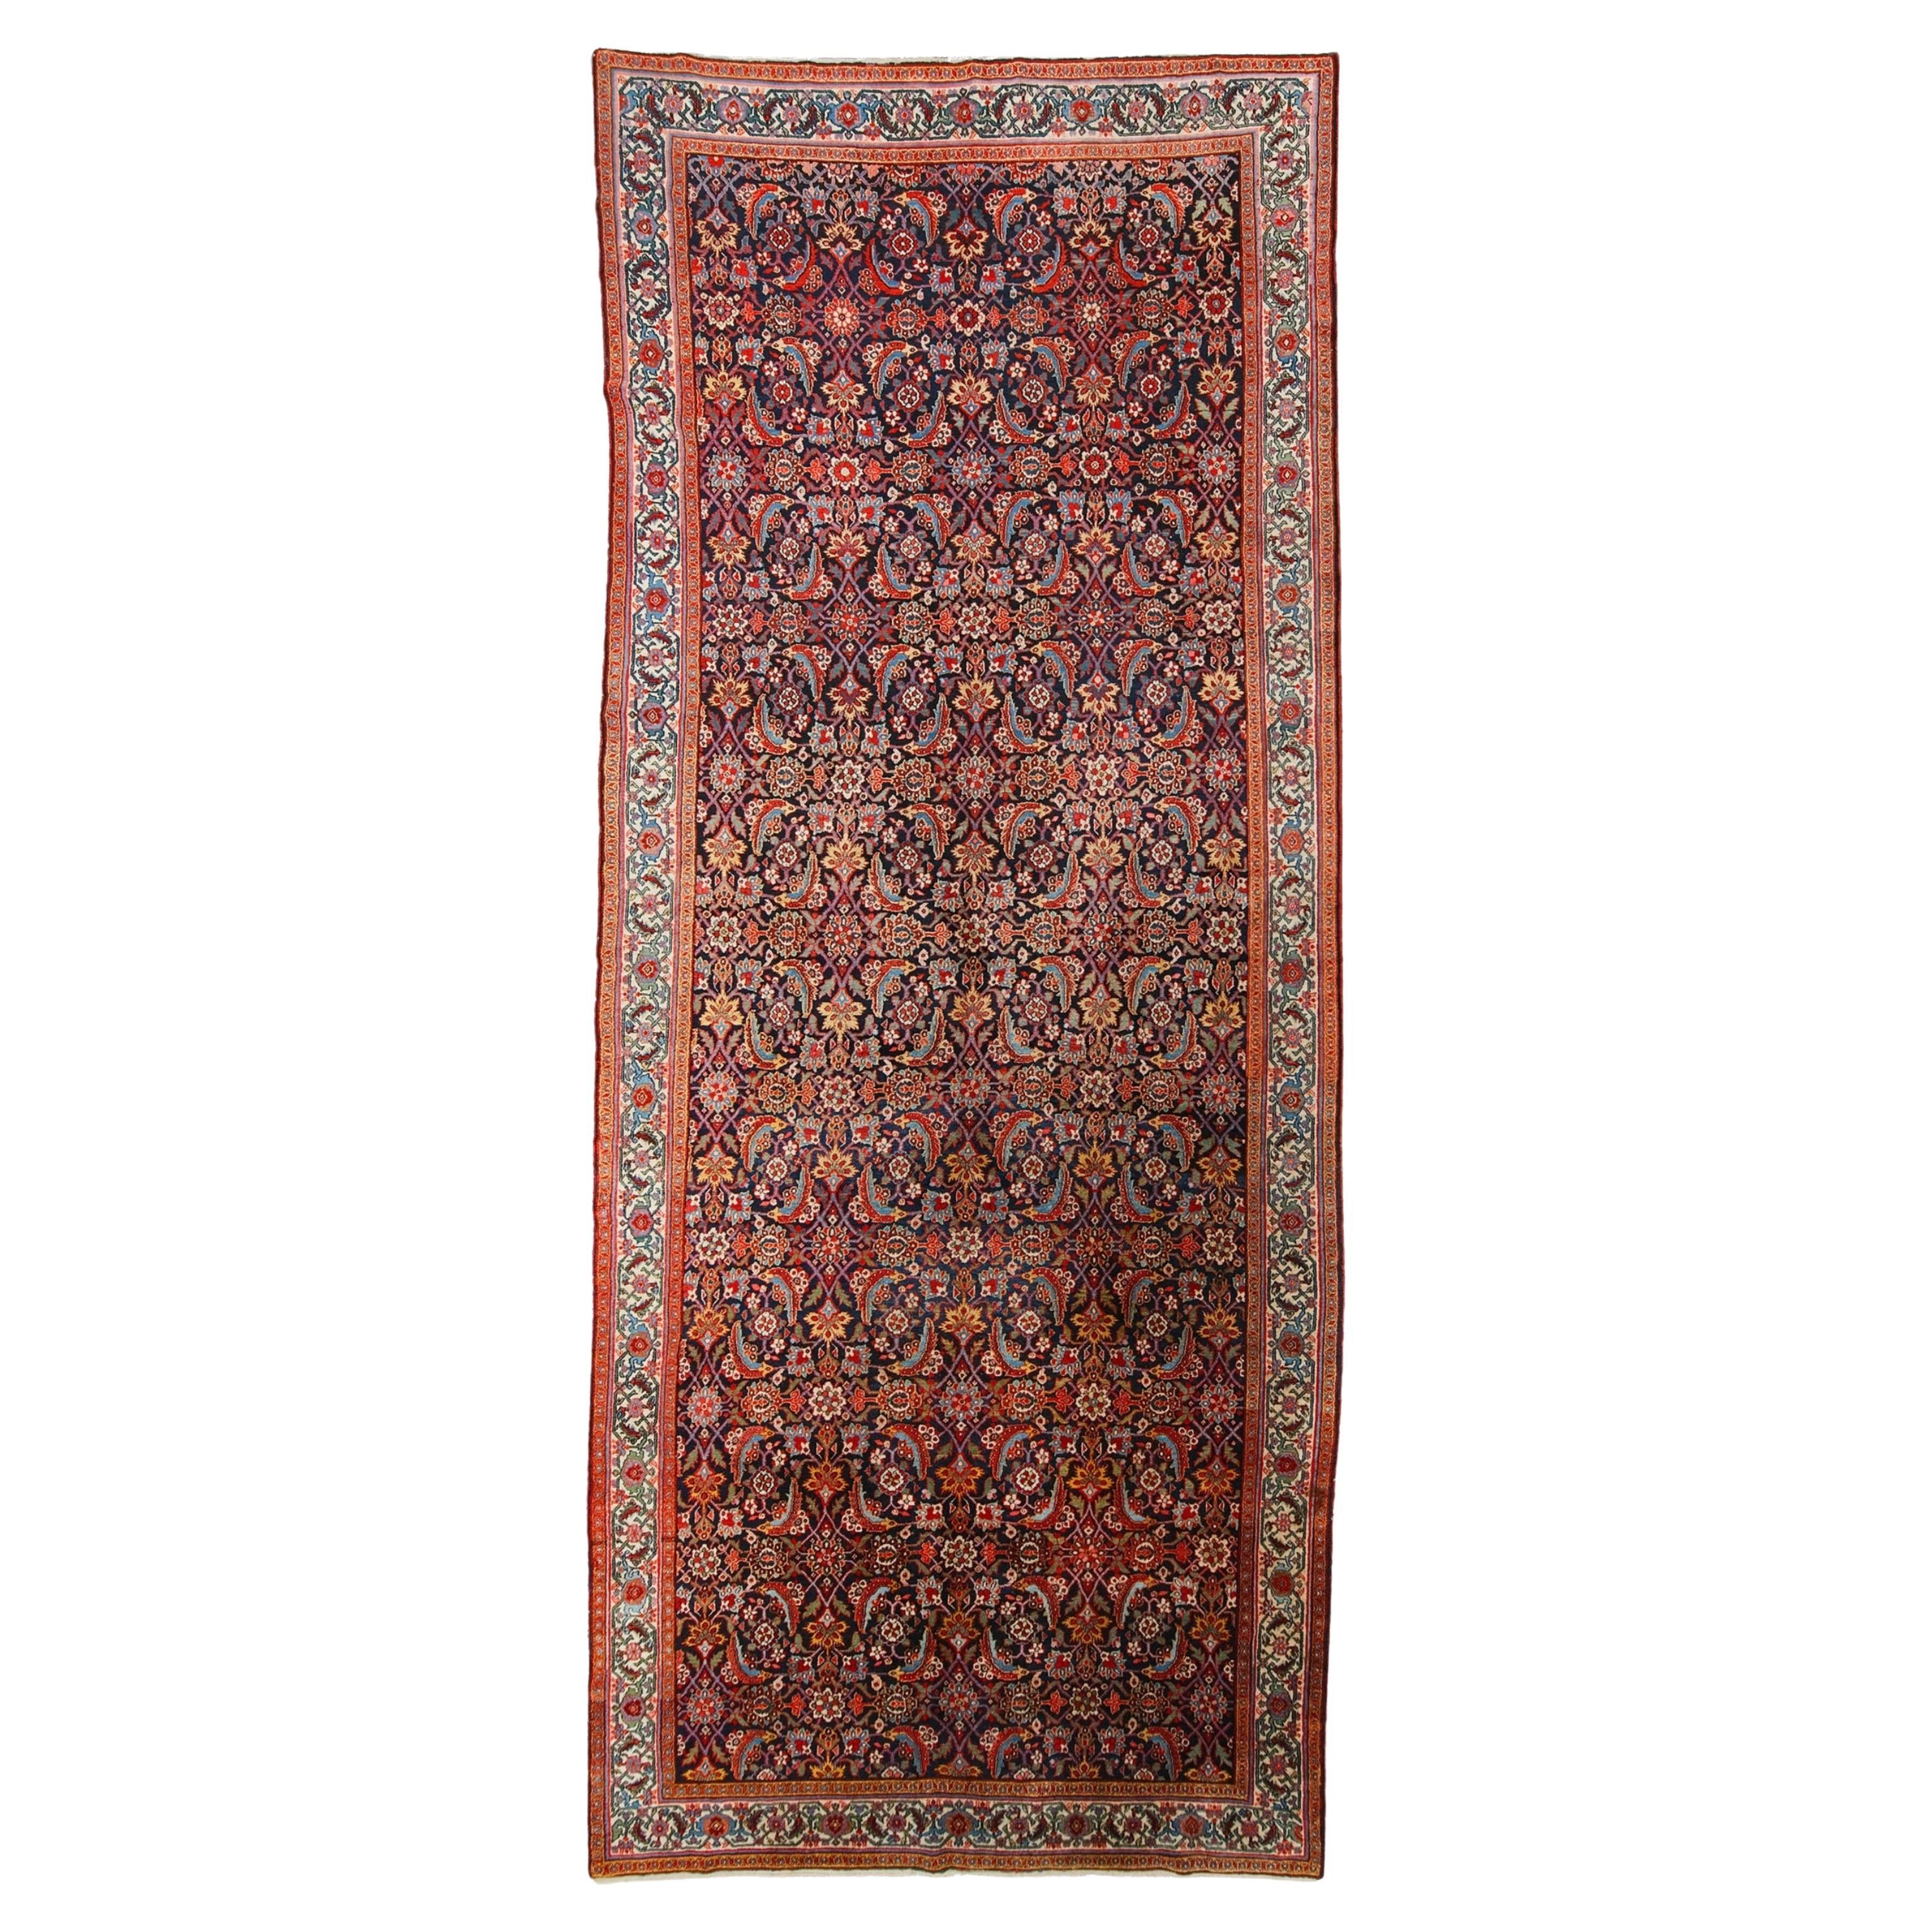 Antique Sarap Carpet - Late of the 19th Century Sarap Rug, Antique Rug For Sale